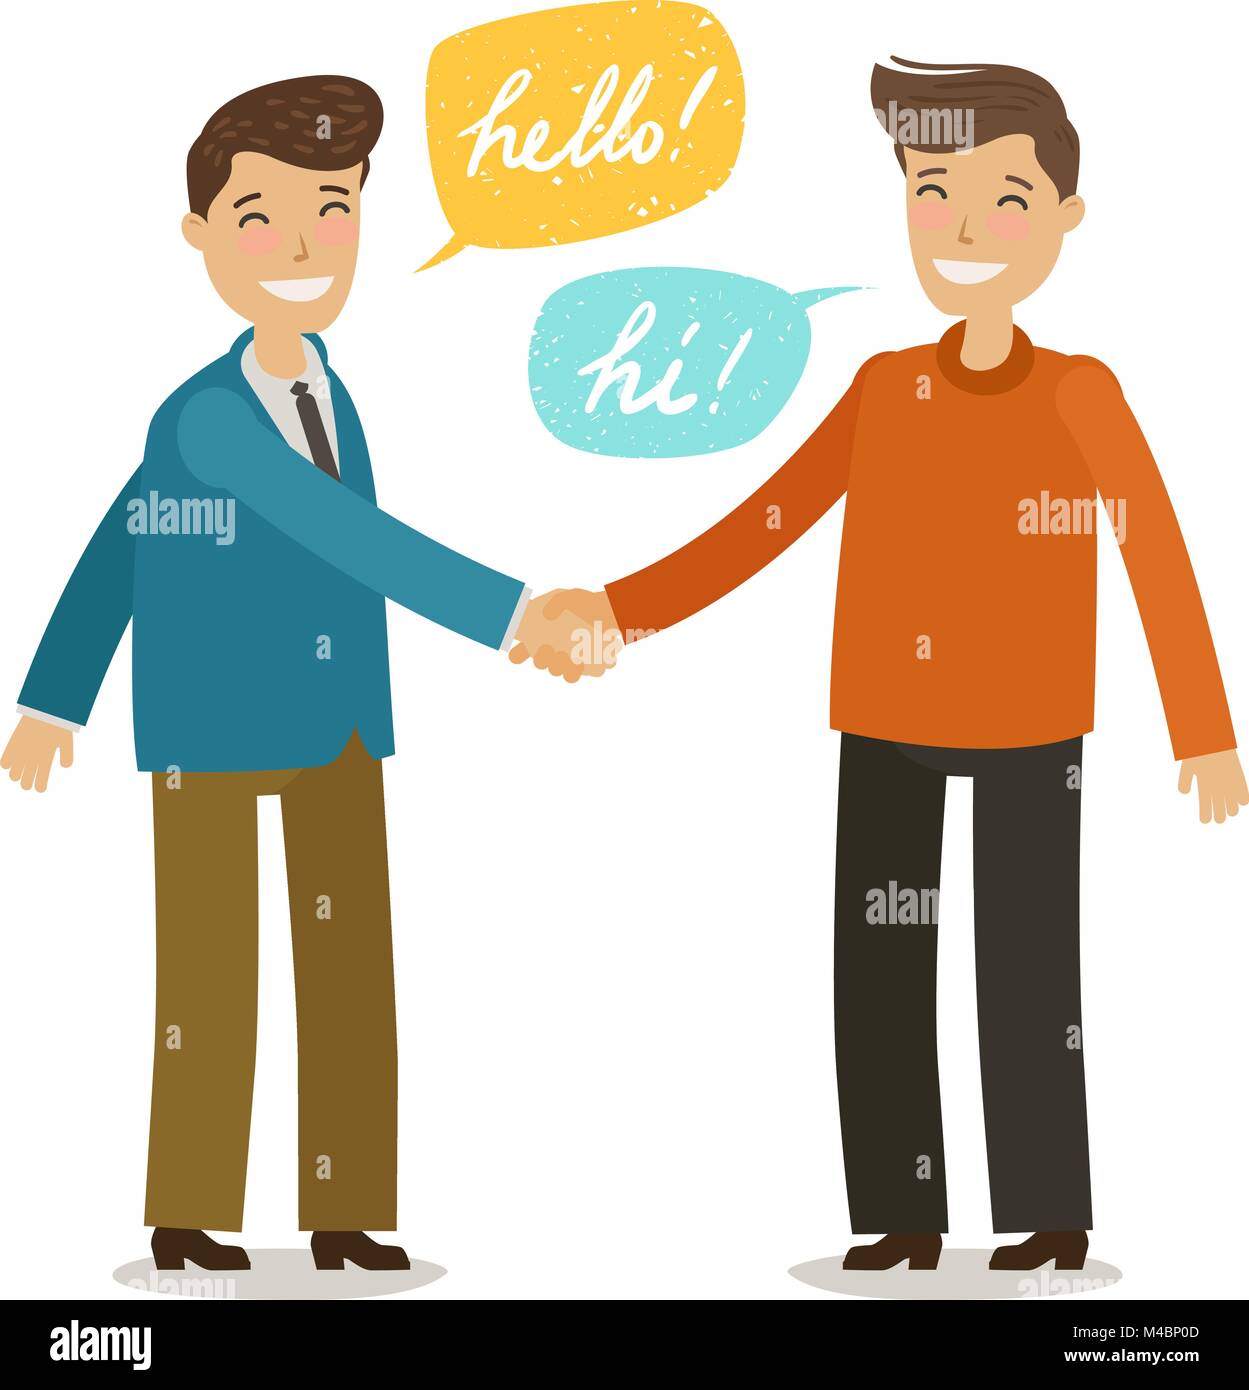 Handshake, Hände schütteln, Freundschaft Konzept. Glückliche Menschen geben sich die Hand zur Begrüßung. Cartoon Vector Illustration im flachen Stil Stock Vektor